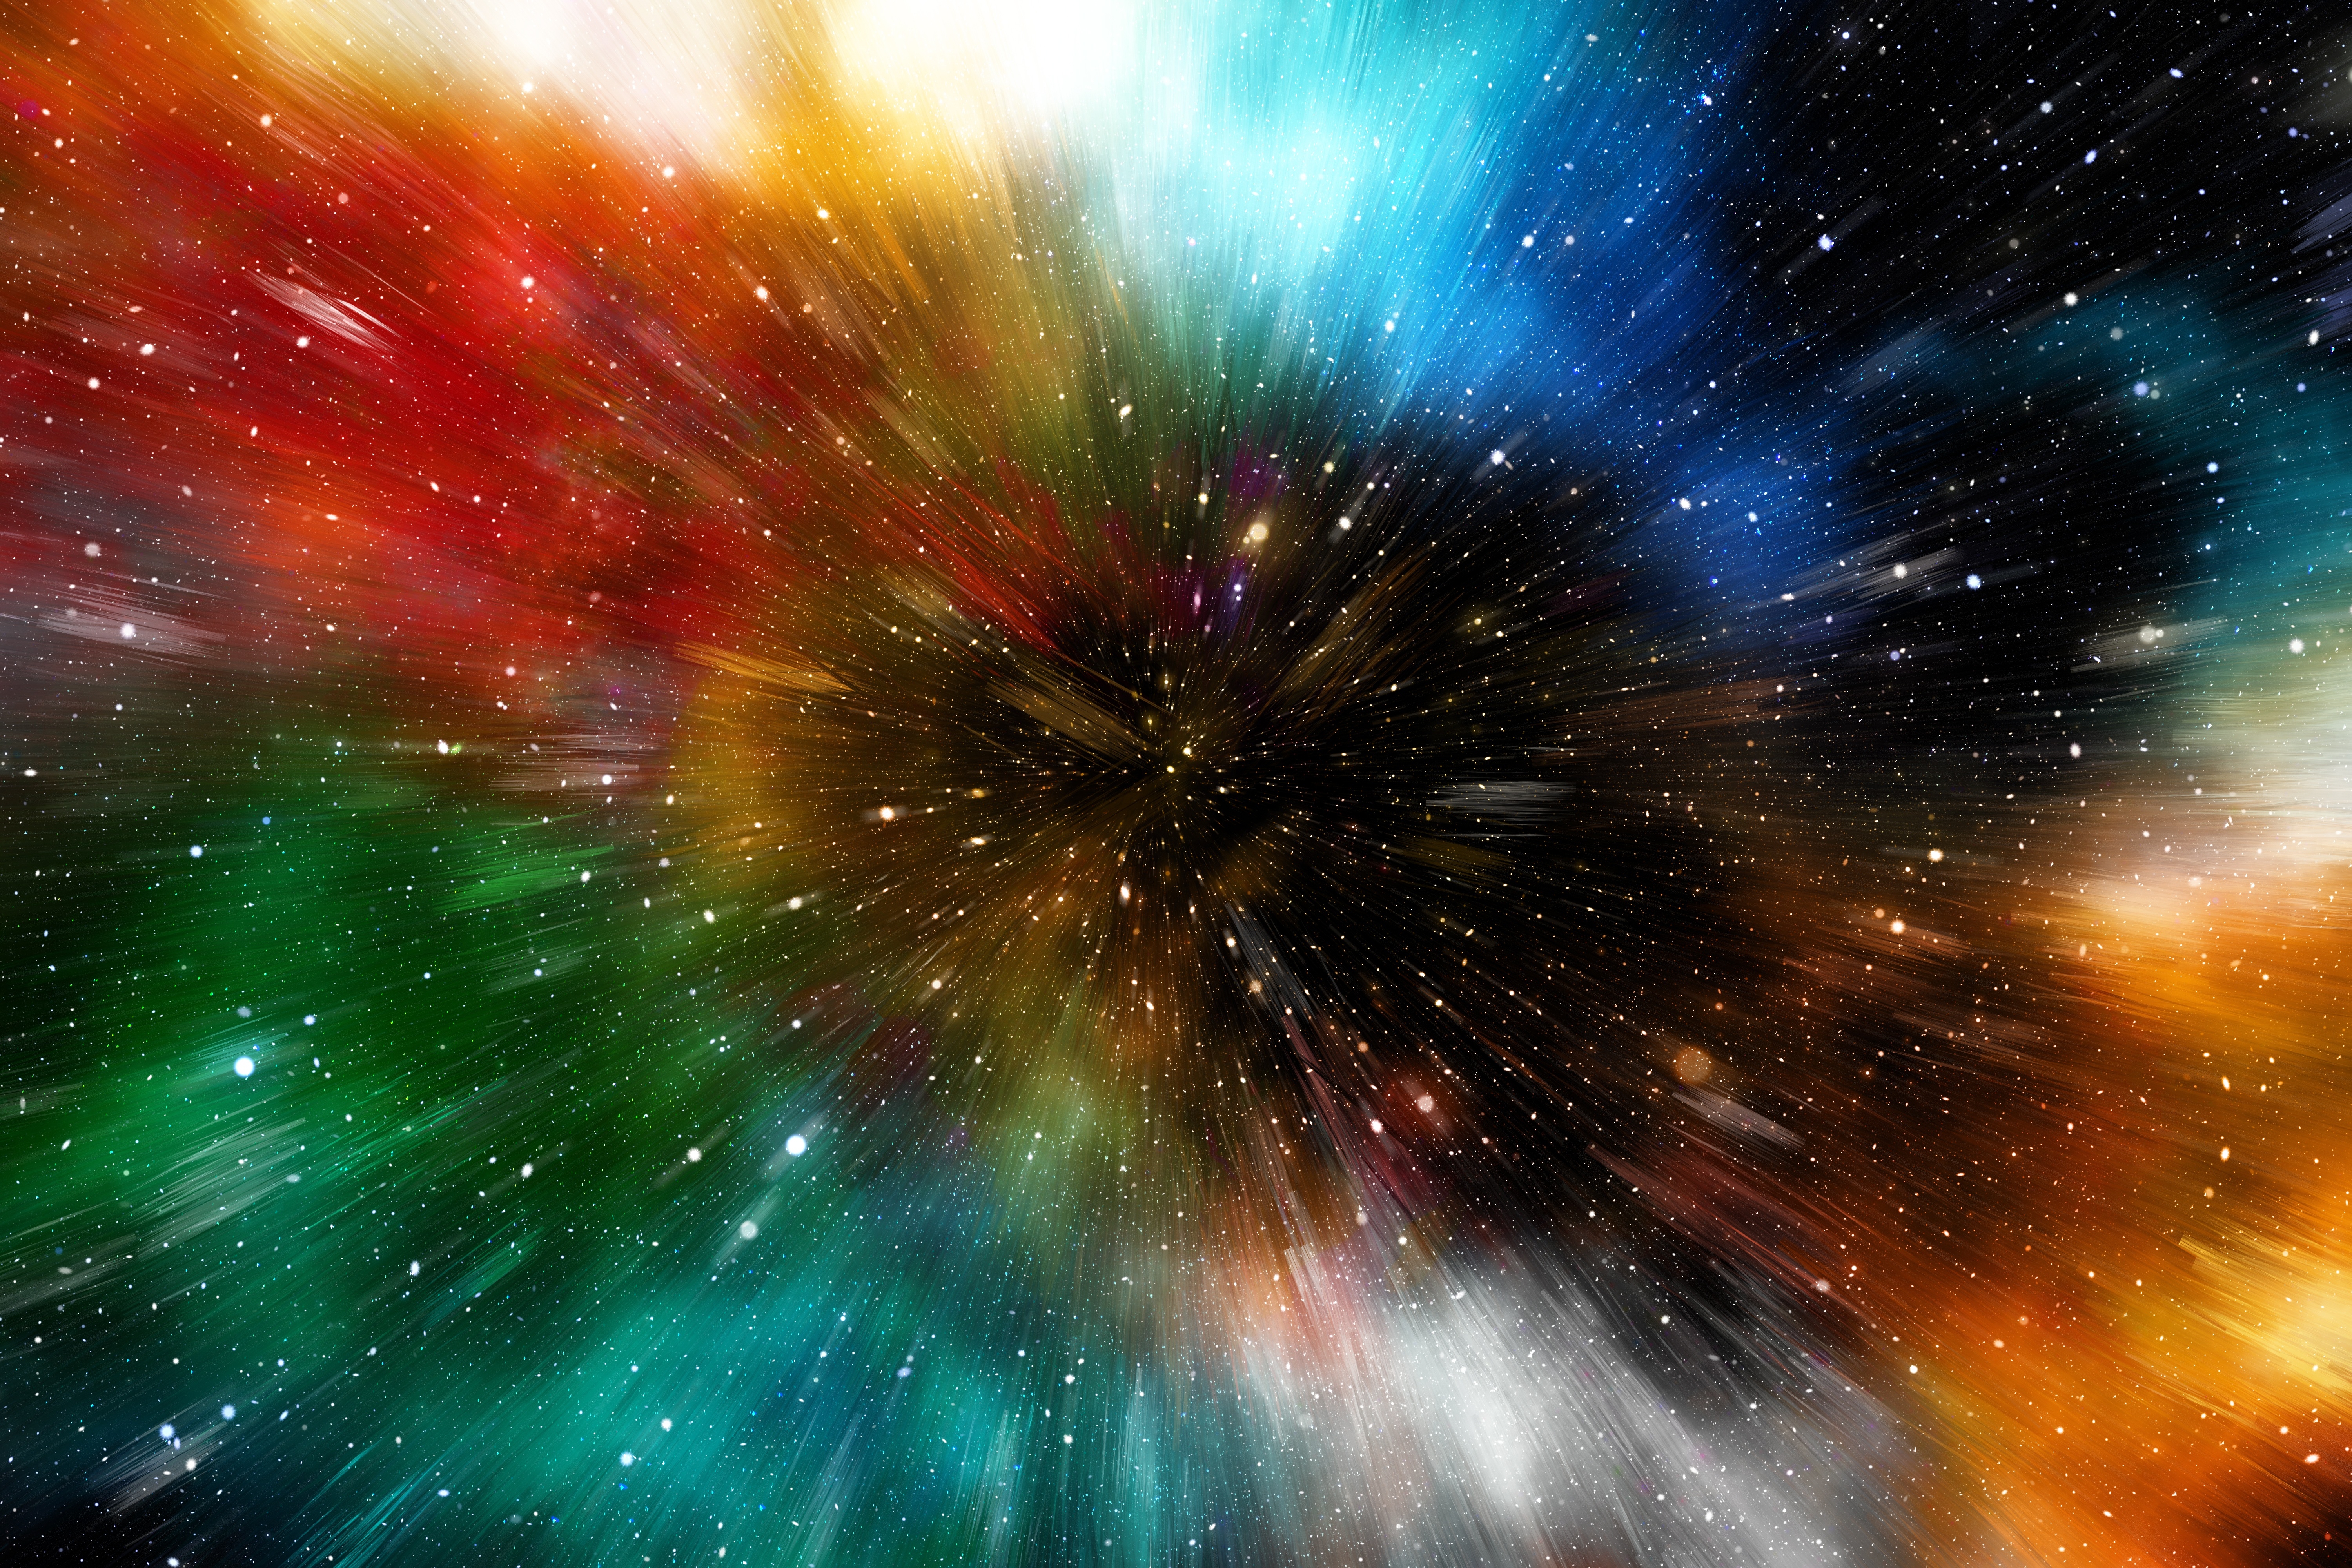 Бесплатное фото Яркая галактическая туманность со звездами